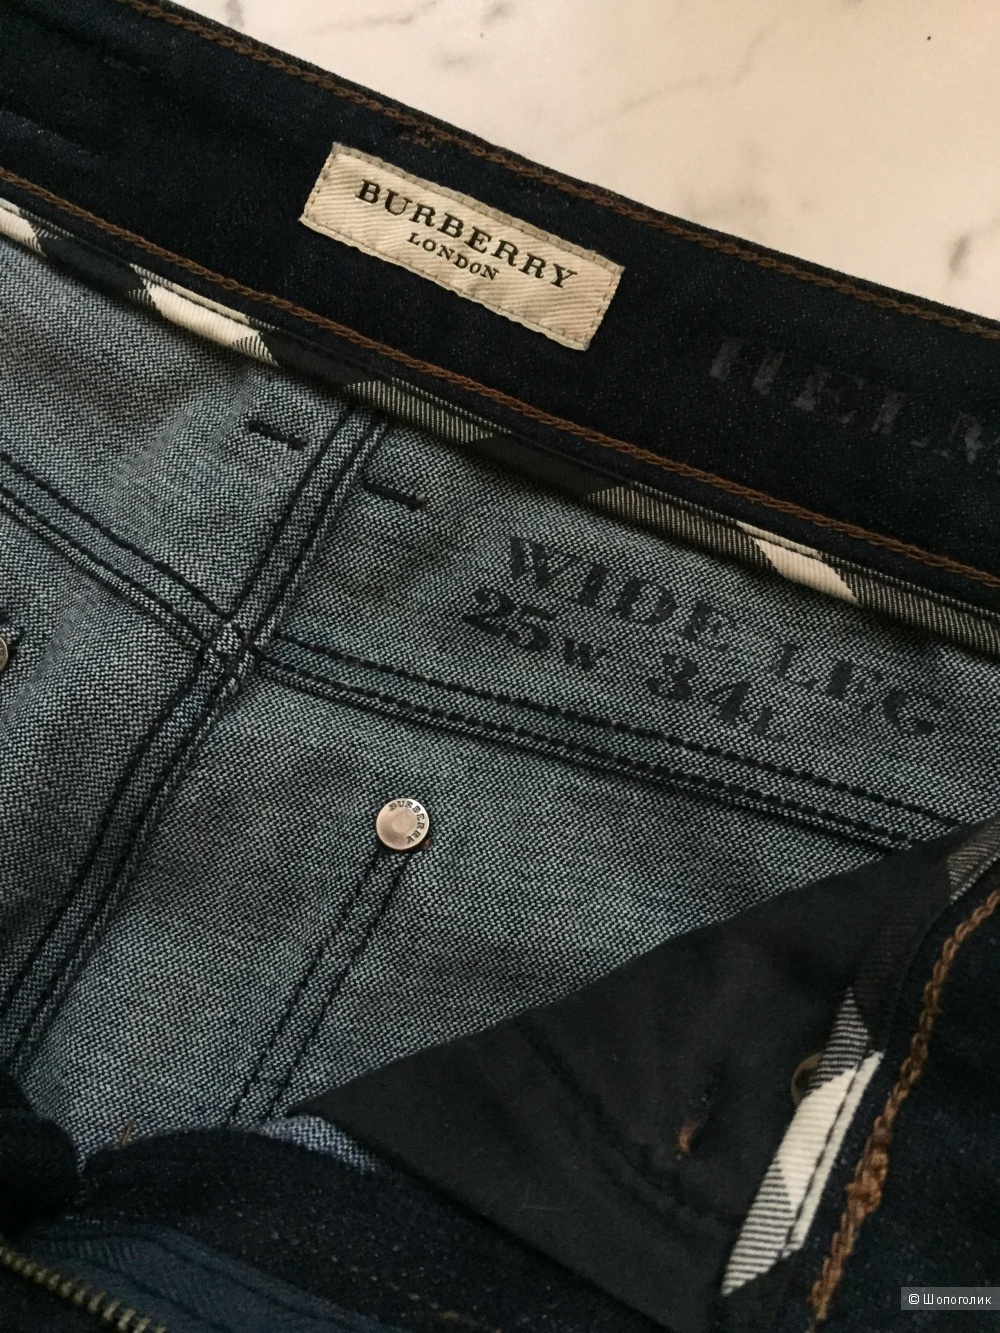 Burberry London  джинсы , размер 25